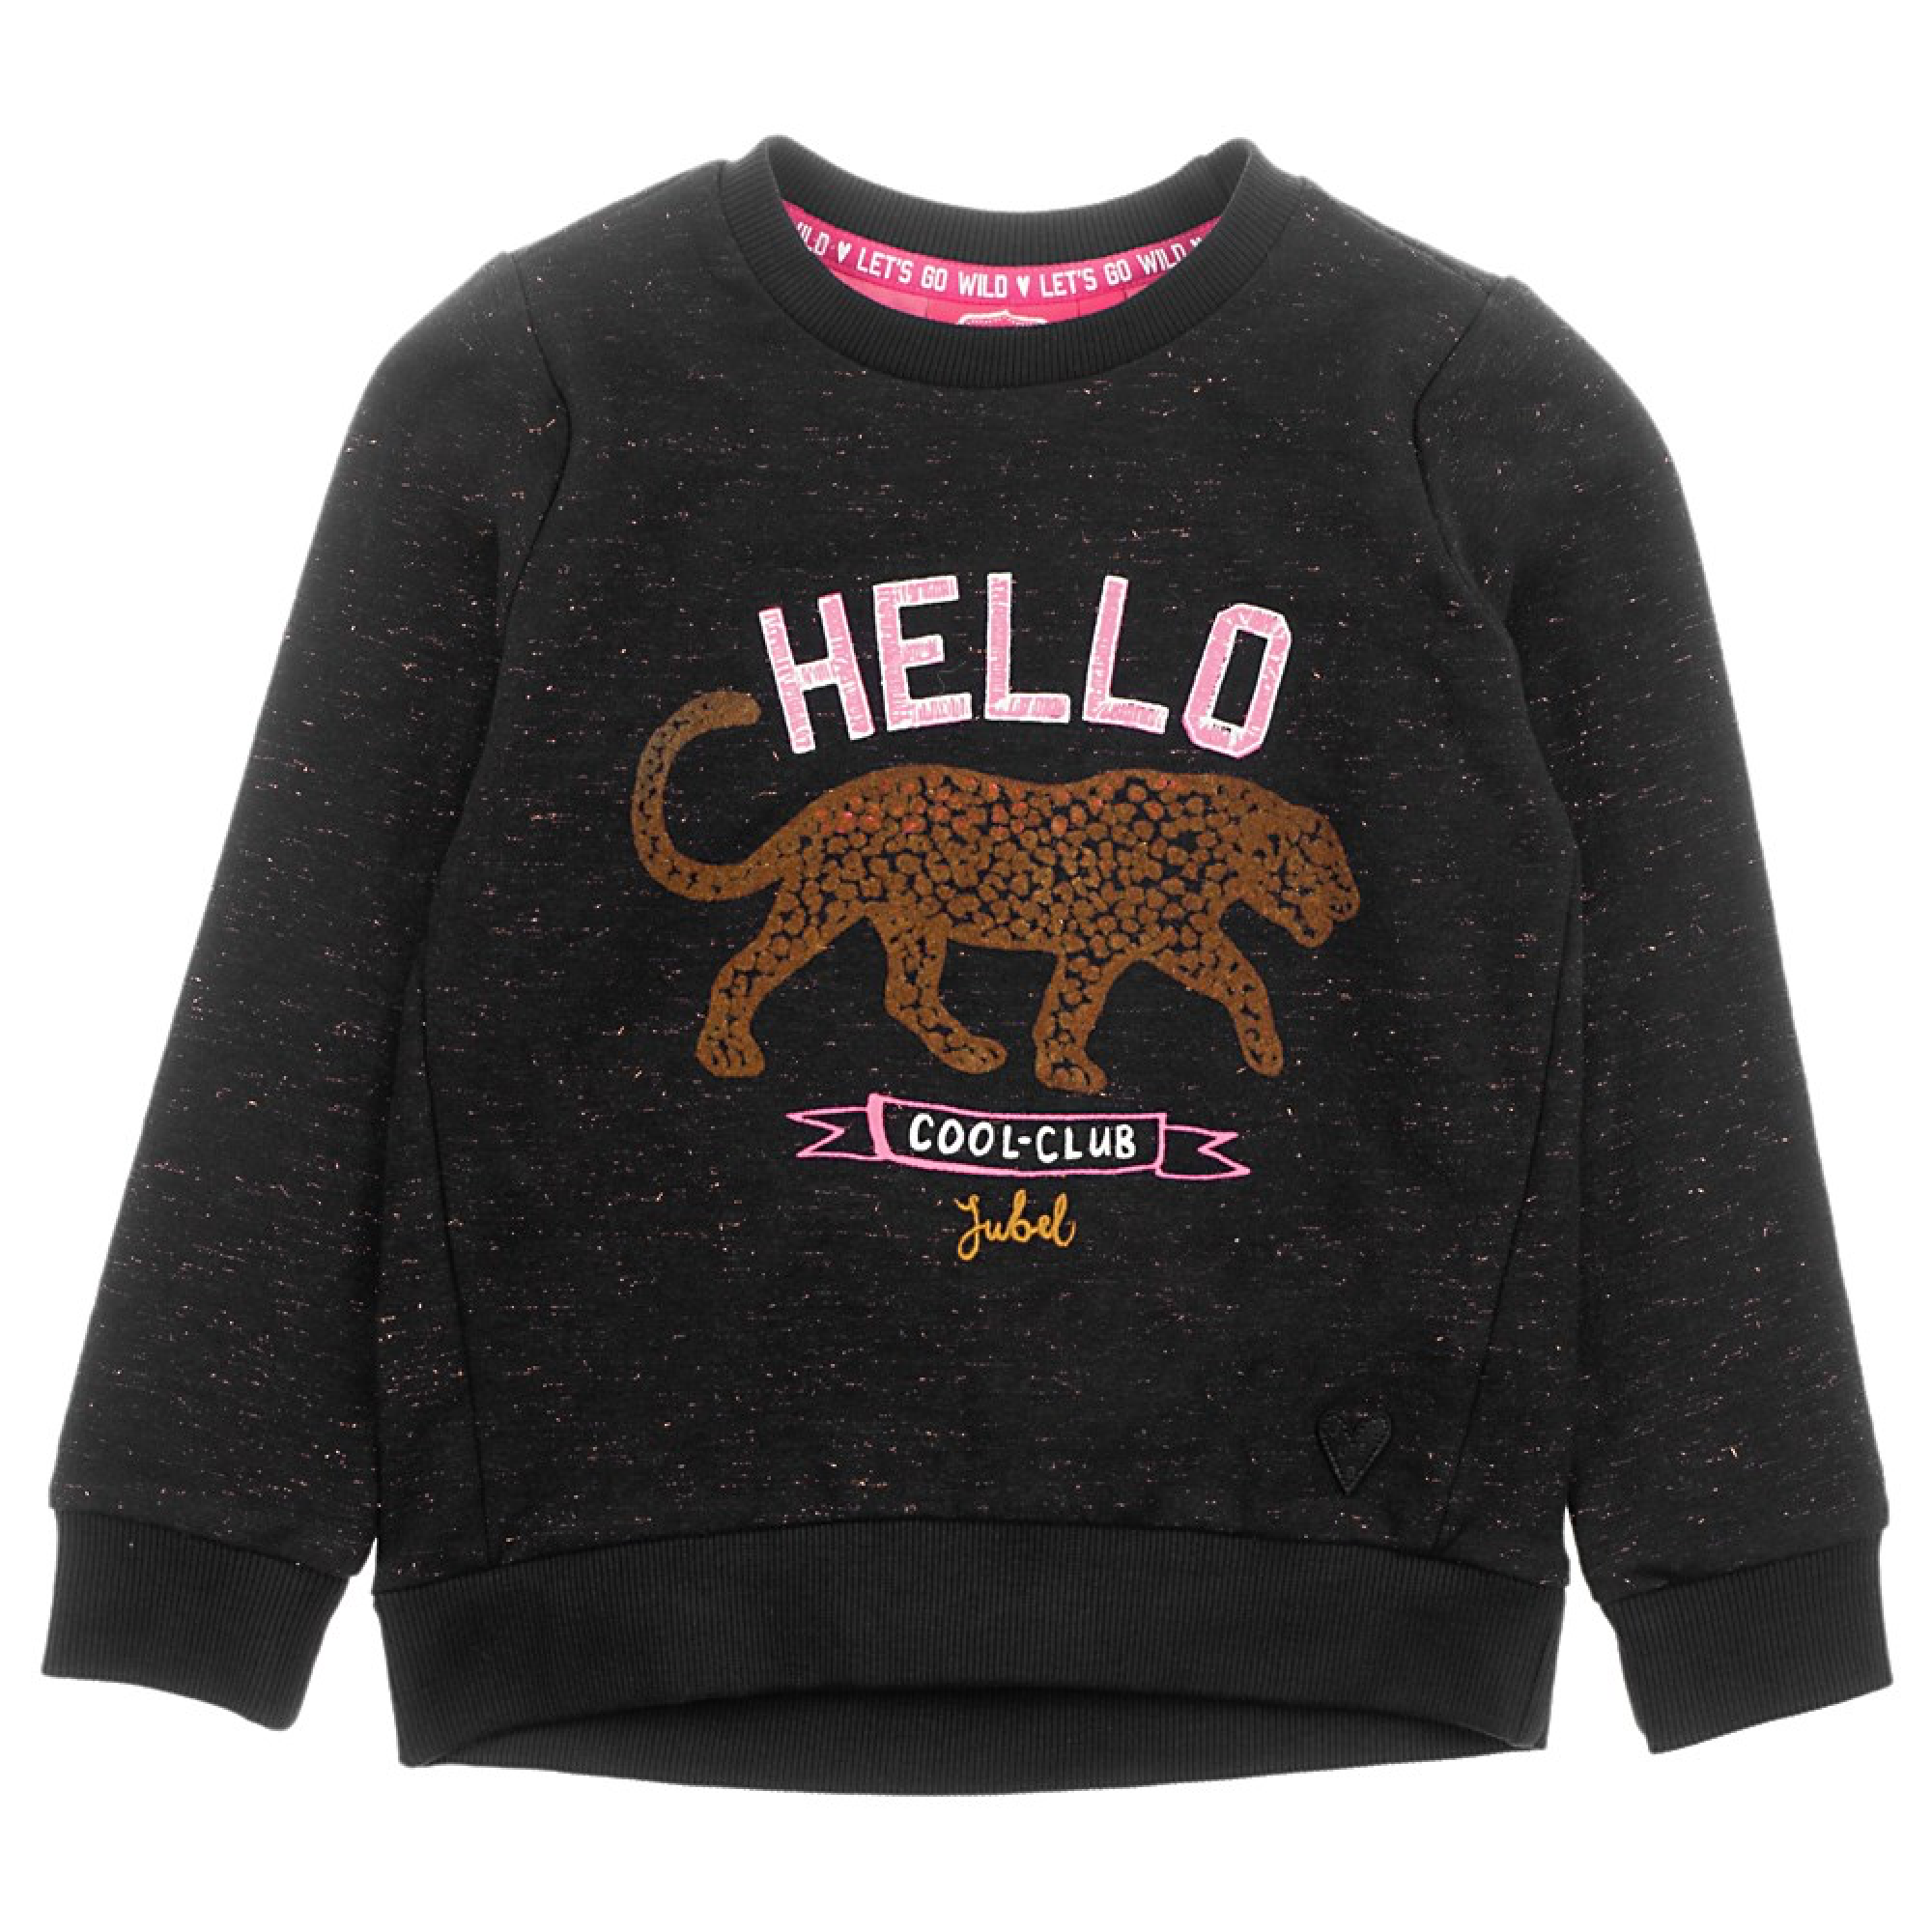 Meisjes Sweater Hello - Animal Attitude van Jubel in de kleur Zwart in maat 140.